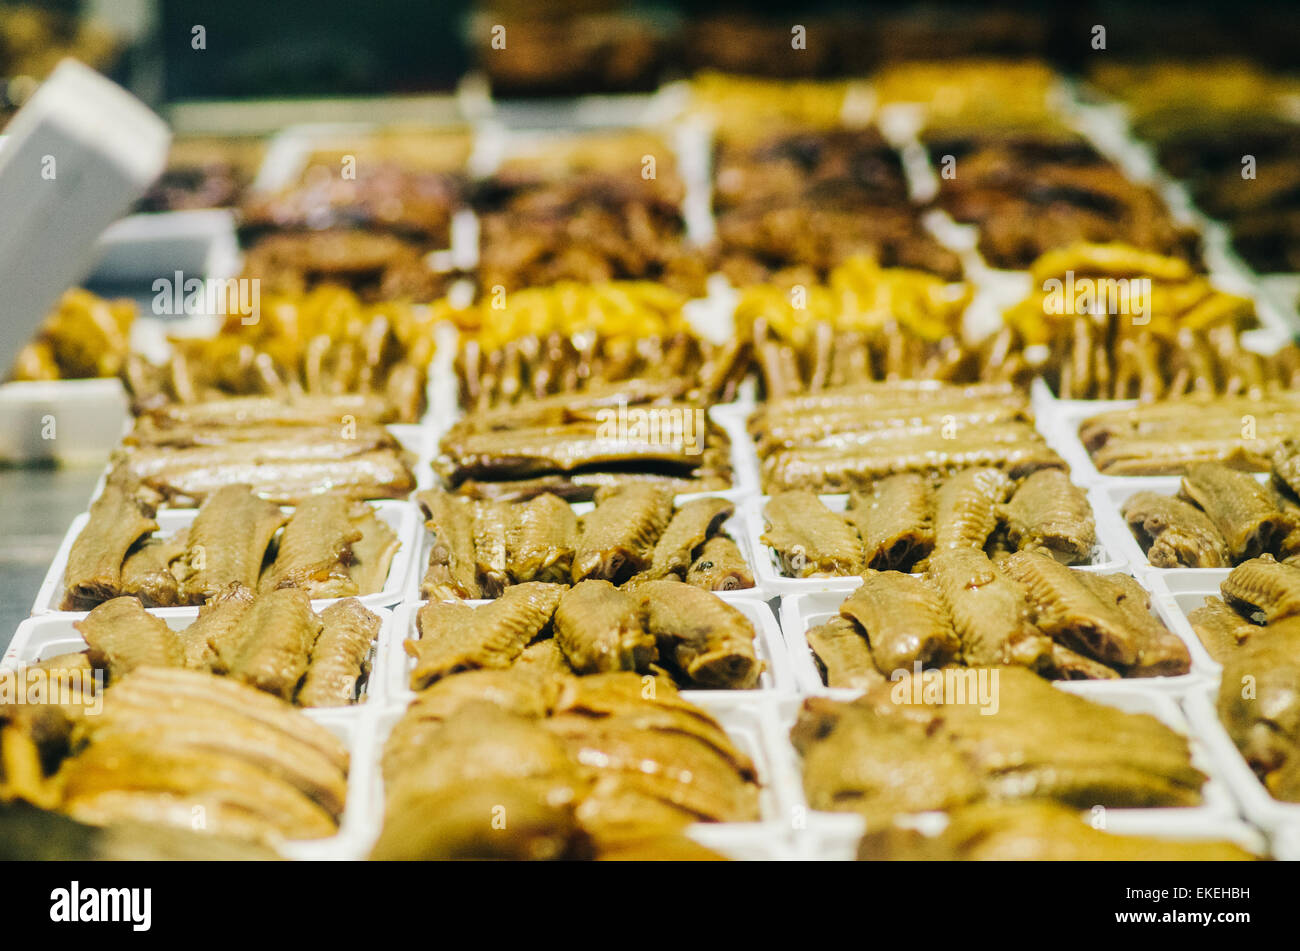 Geschmorte Ente Flügel und Teile als snack, gemeinsame chinesisches Essen. Stockfoto